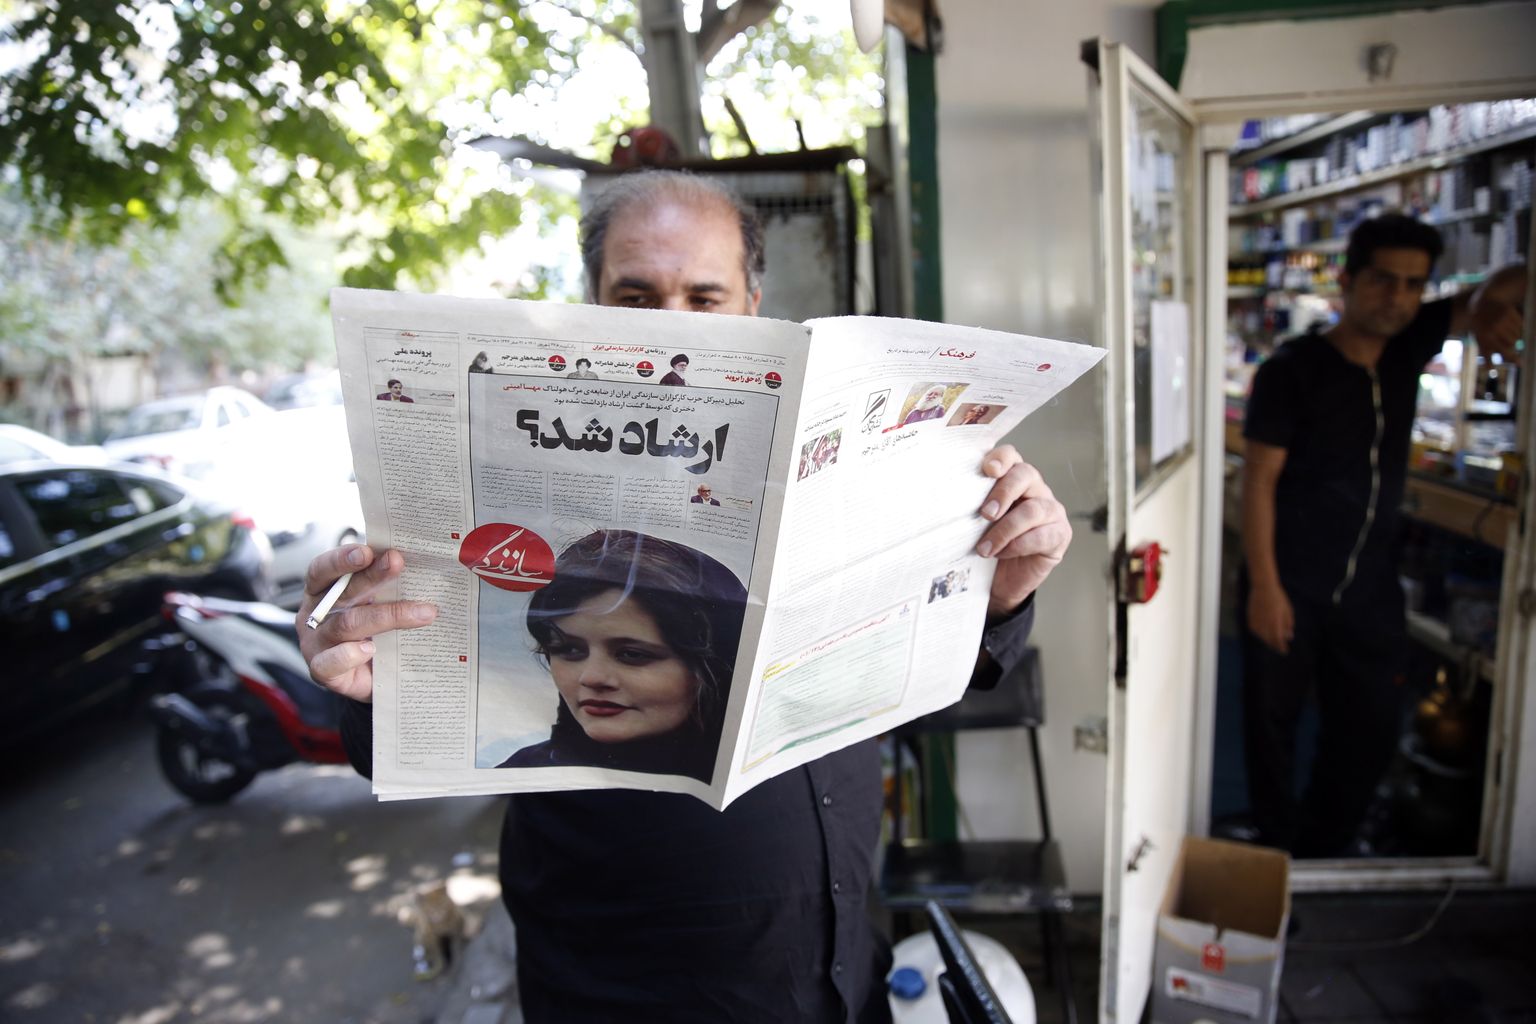 22-aastase Mahsa Amini pilt Iraani päevalehe kaanel. Tema surm moraalipolitsei küüsi jäämise järel on põhjustanud proteste nii Kurdistanis kui ka nüüd pealinnas Teheranis.